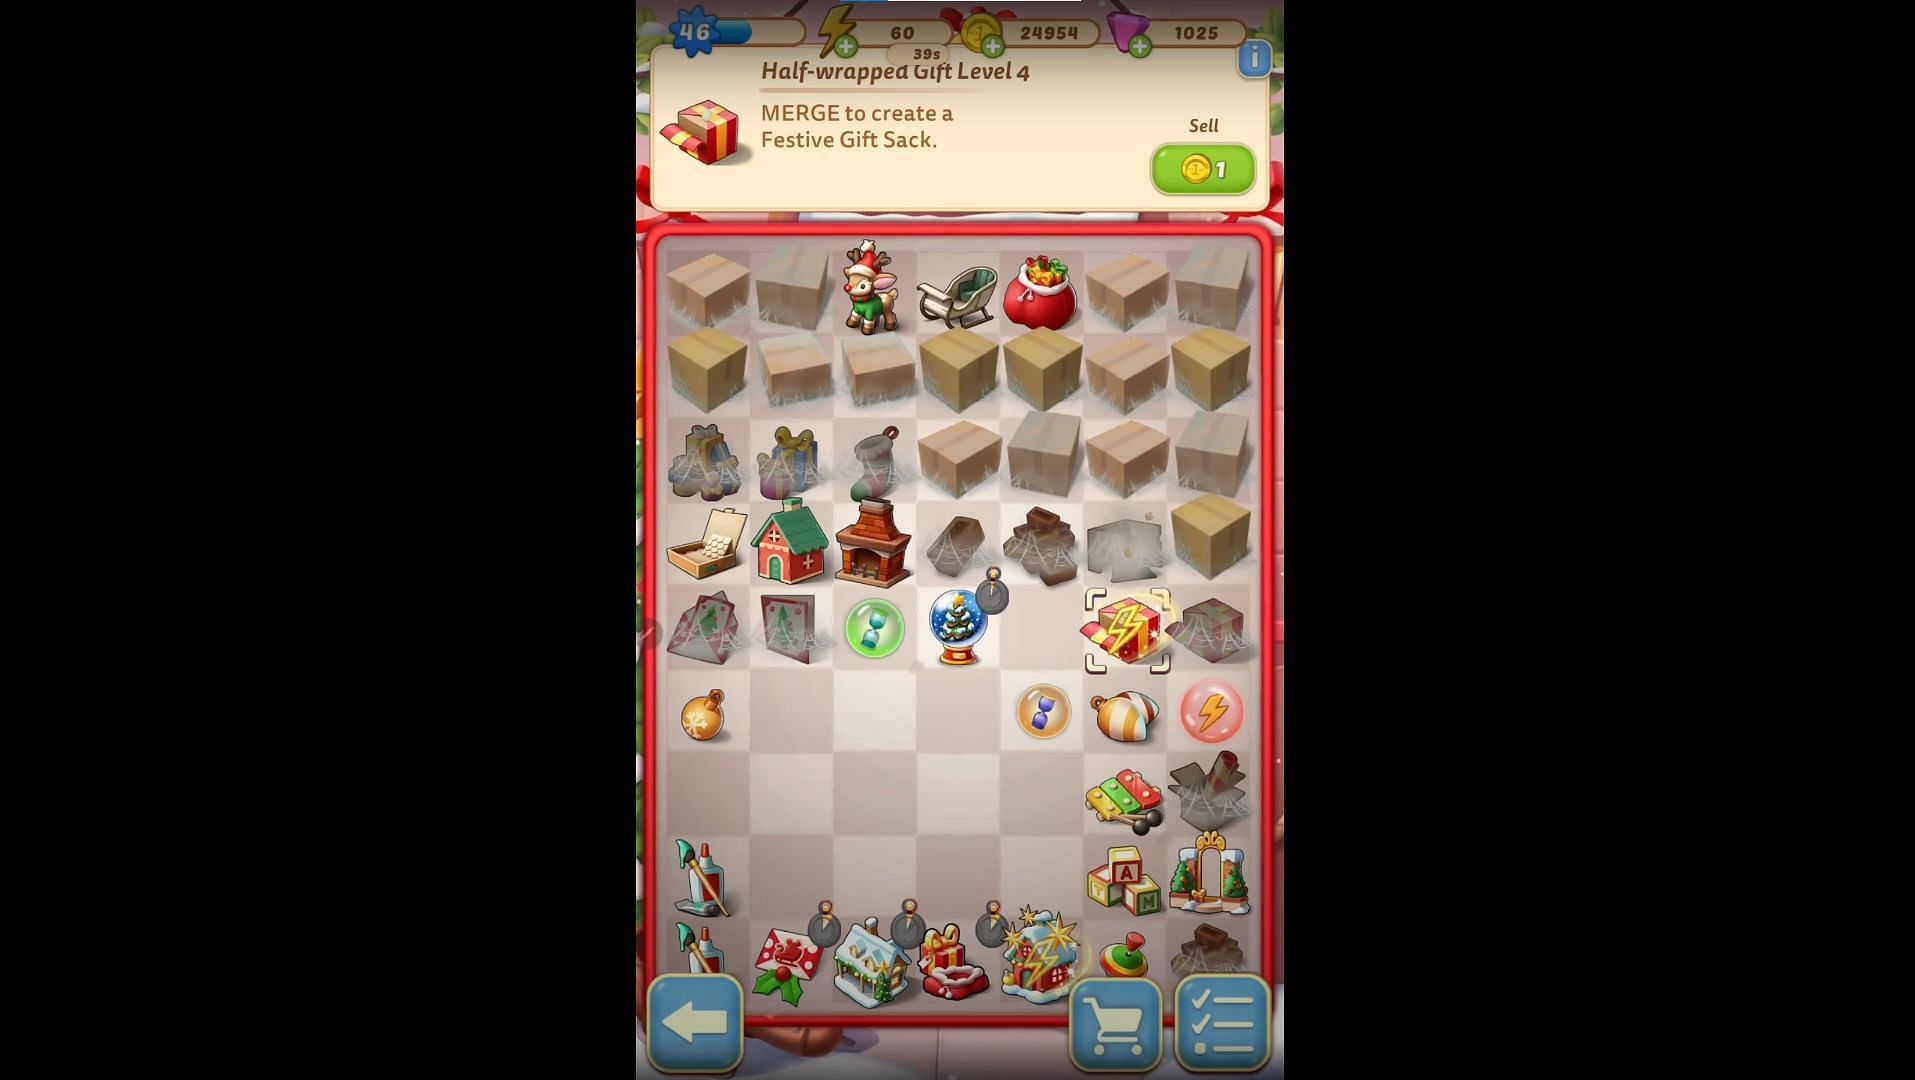 Tendrás que alimentar el trineo vacío de Papá Noel (Imagen a través de Play Games/YouTube)